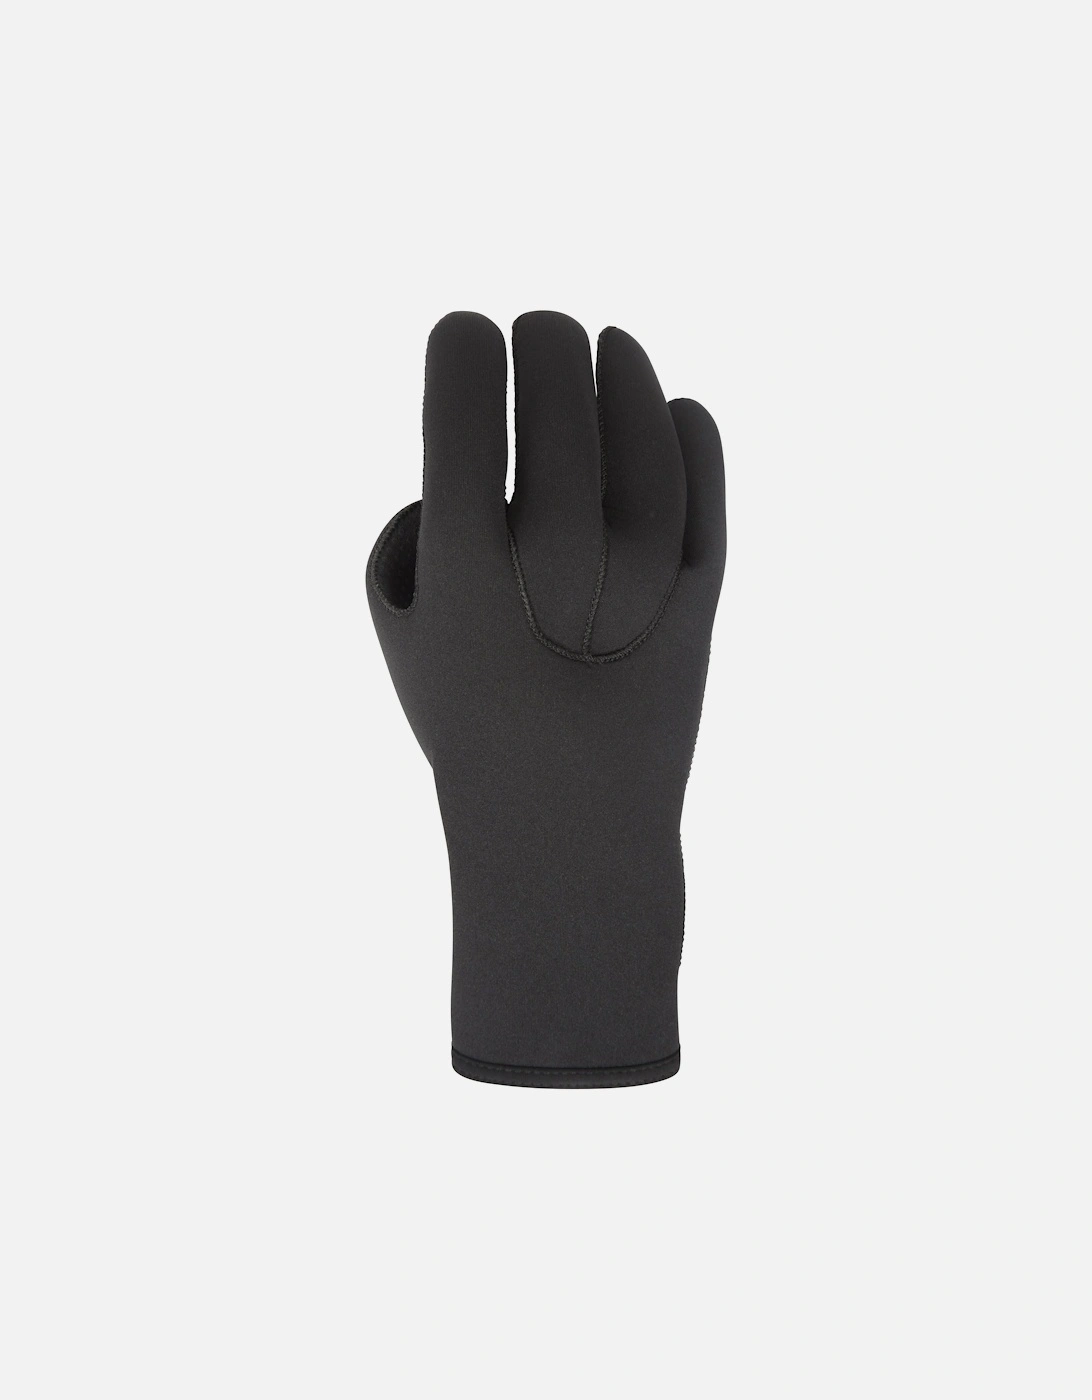 Unisex Adult Neoprene Swimming Gloves, 5 of 4